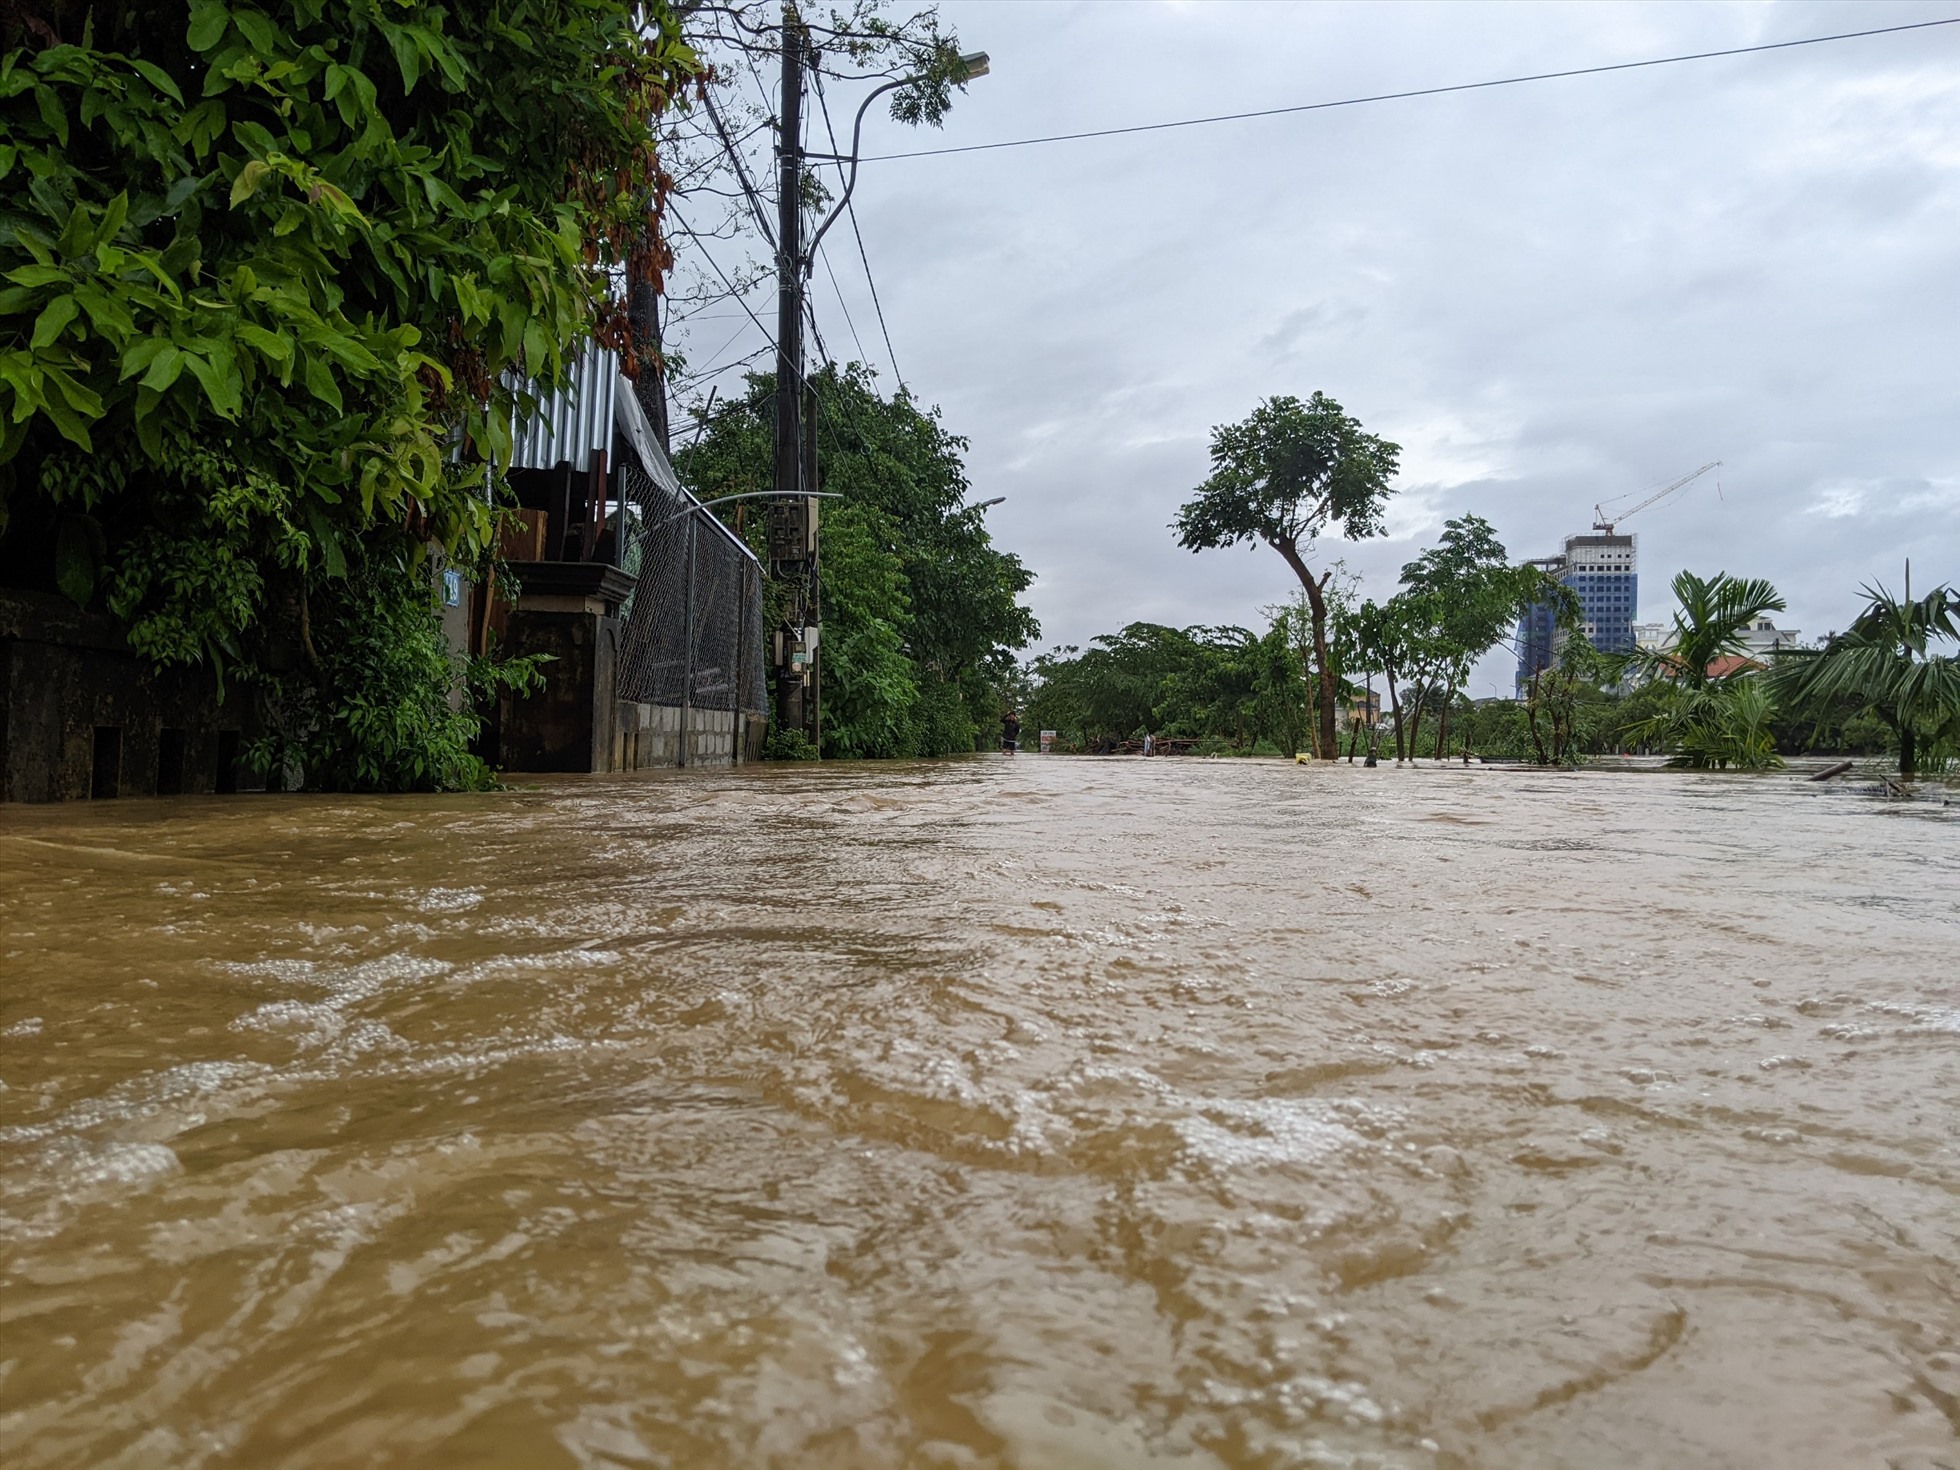 Sáng 15/10, Văn phòng Ban chỉ huy PCTT-TKCN tỉnh Thừa Thiên Huế cho biết, đến 3h sáng cùng ngày, do nước sông lên cao và ngập úng bởi cường suất mưa lớn, gây ngập cho nhà cửa ước tính có khoảng 11.200 nhà ngập, với độ sâu 0,3-0,8m tùy từng vùng và khu vực.